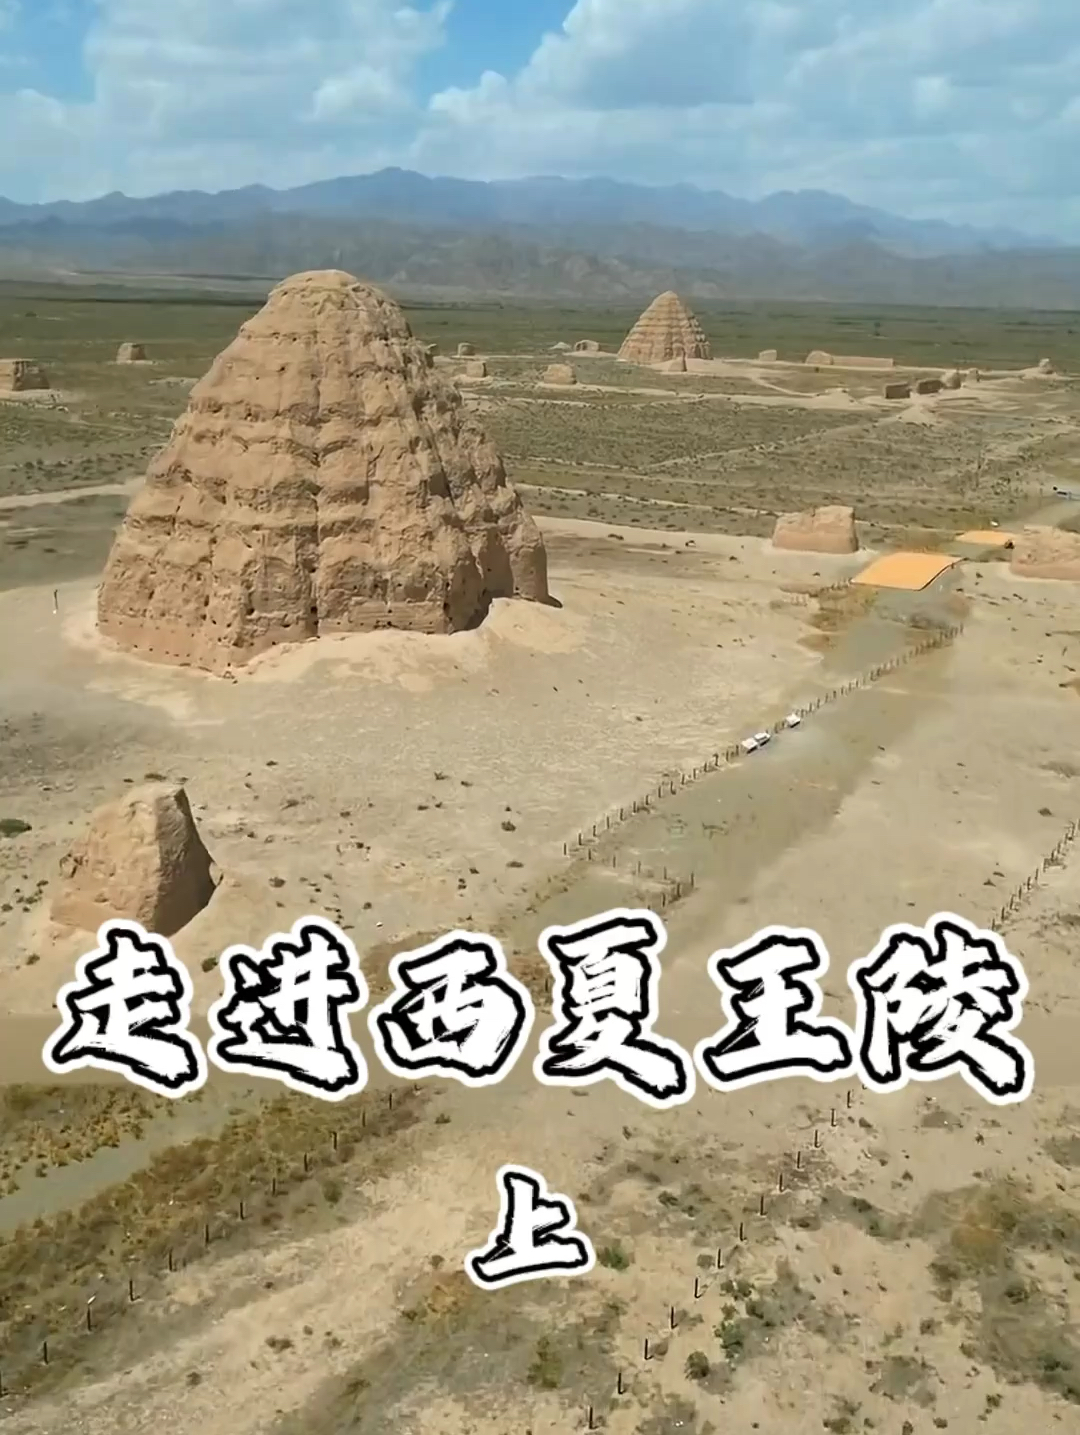 这里就是被誉为东方金字塔的西夏王陵，它的面积比明代的十三陵还要大，被称为史上最神秘的皇陵之一 #旅游